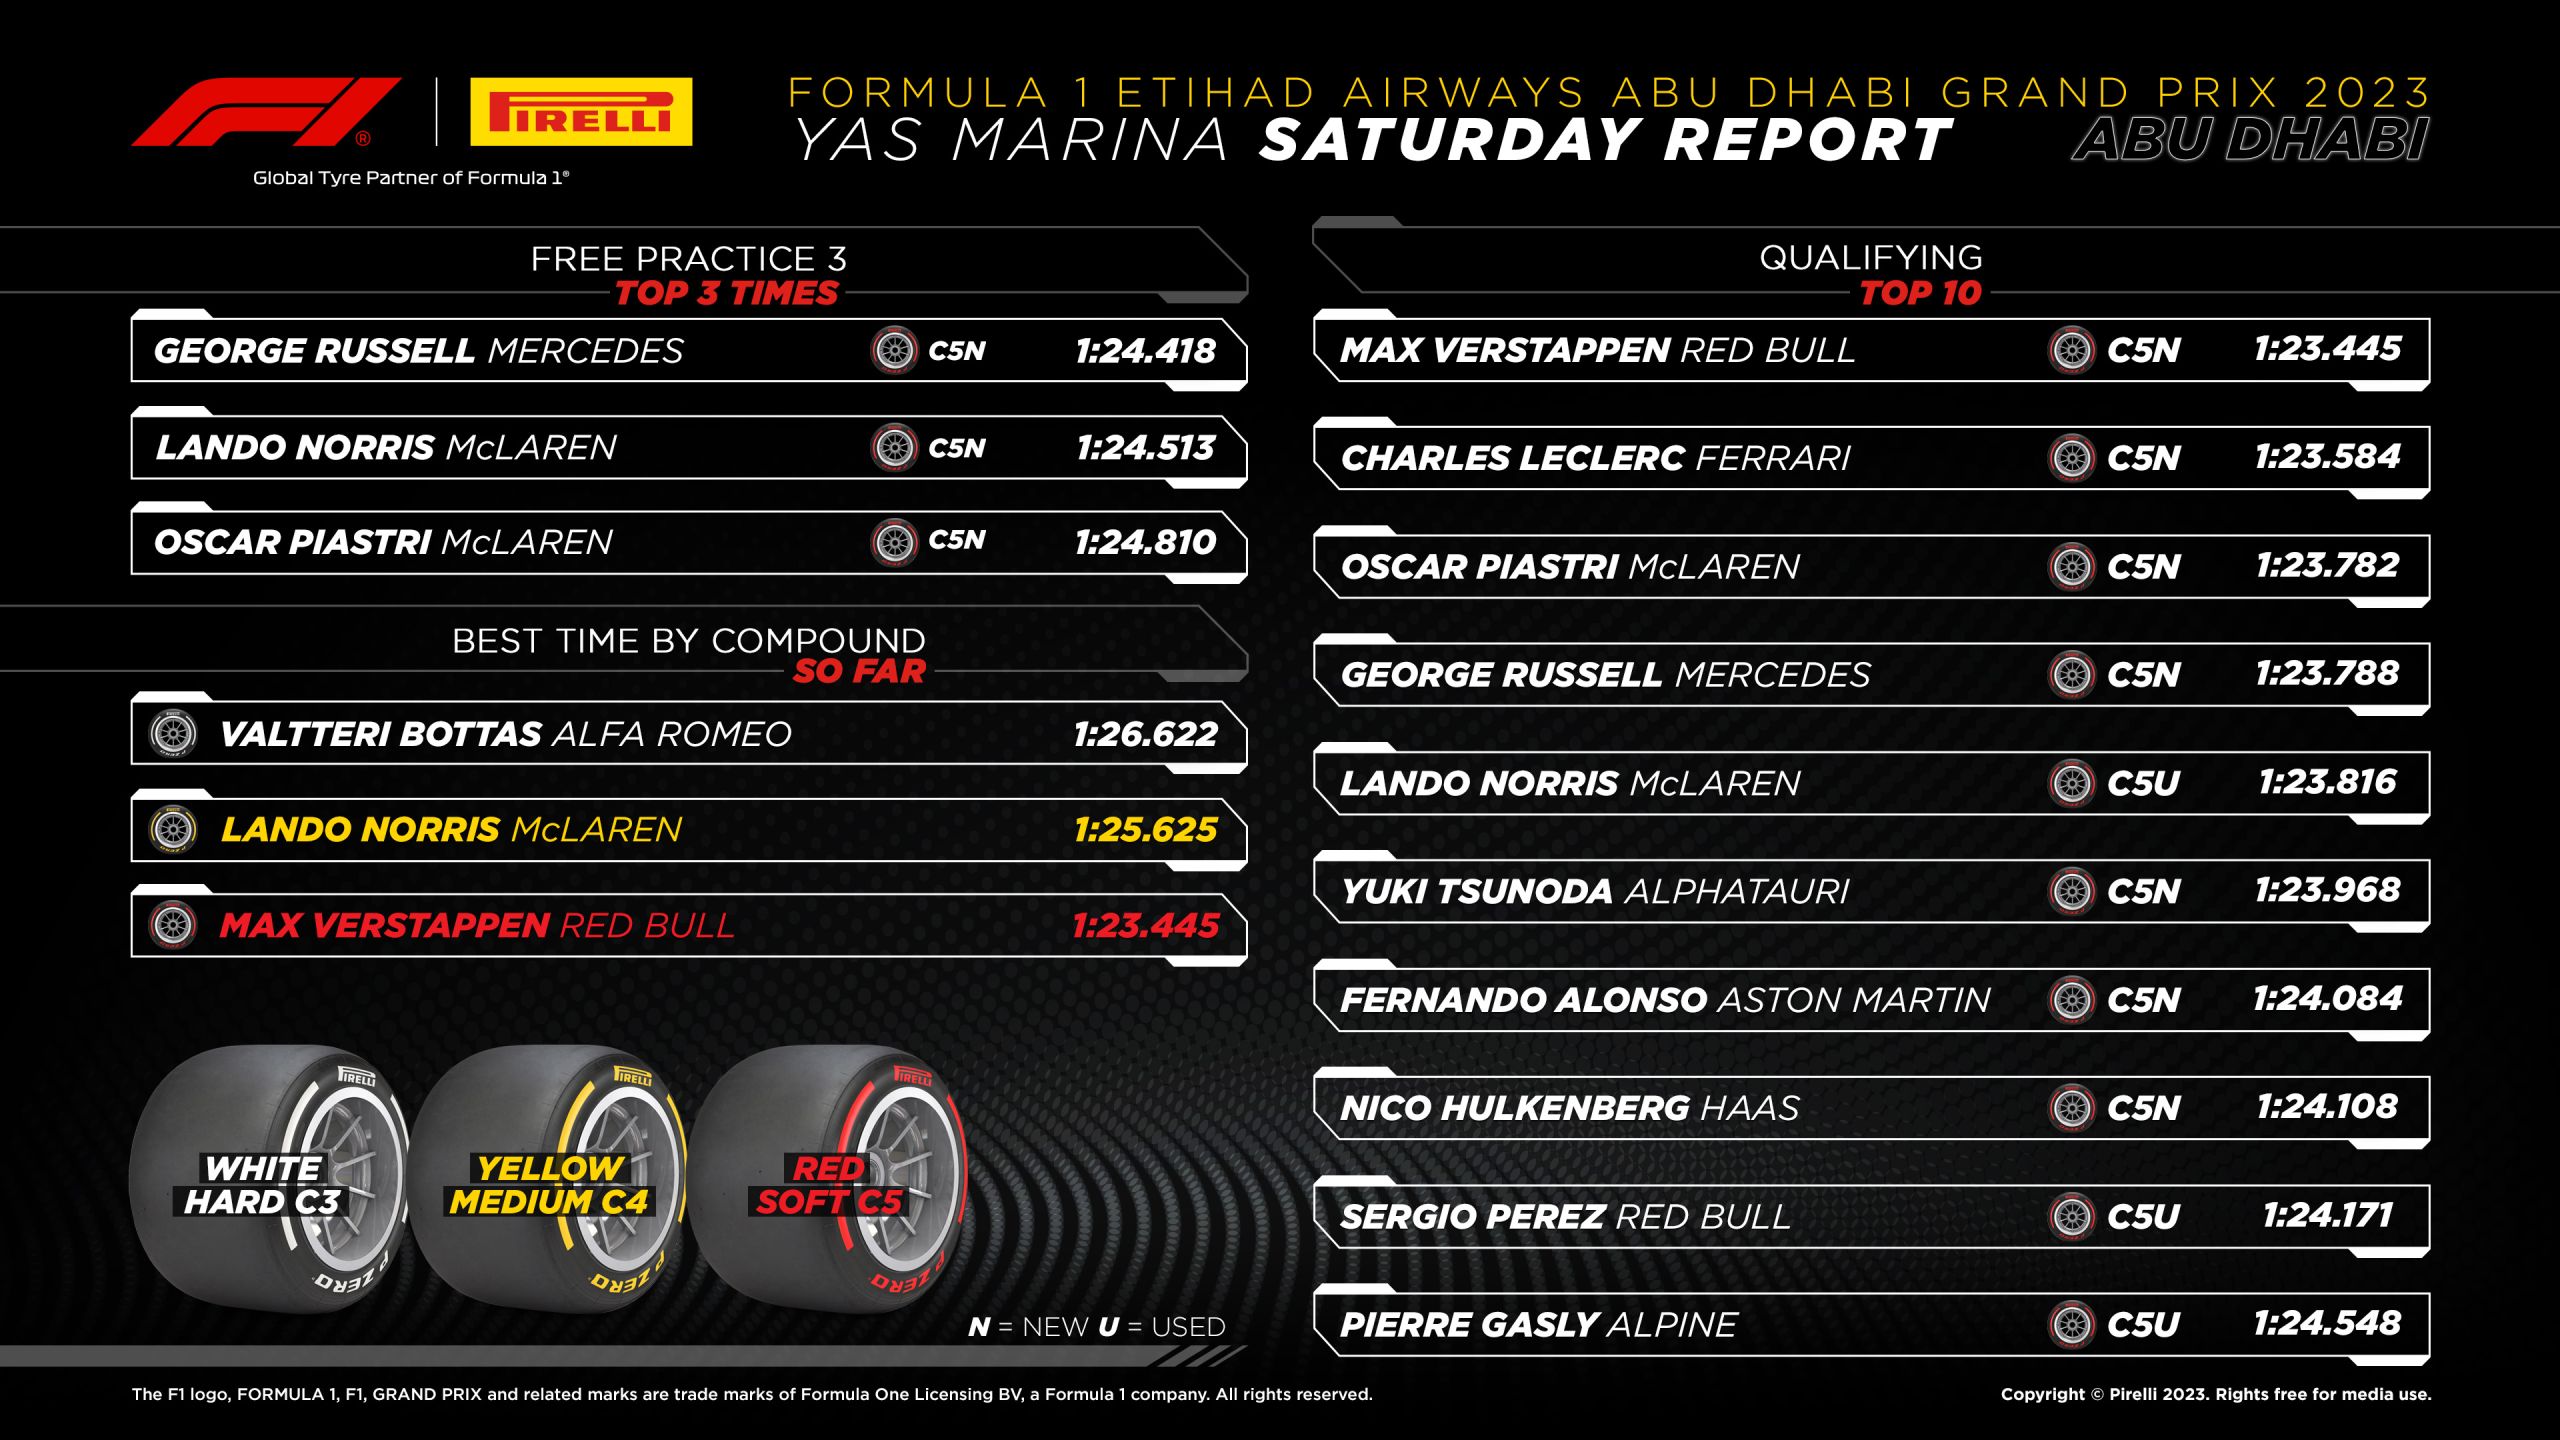 2023 Abu Dhabi Grand Prix: Qualifying Tyre Analysis Graphic